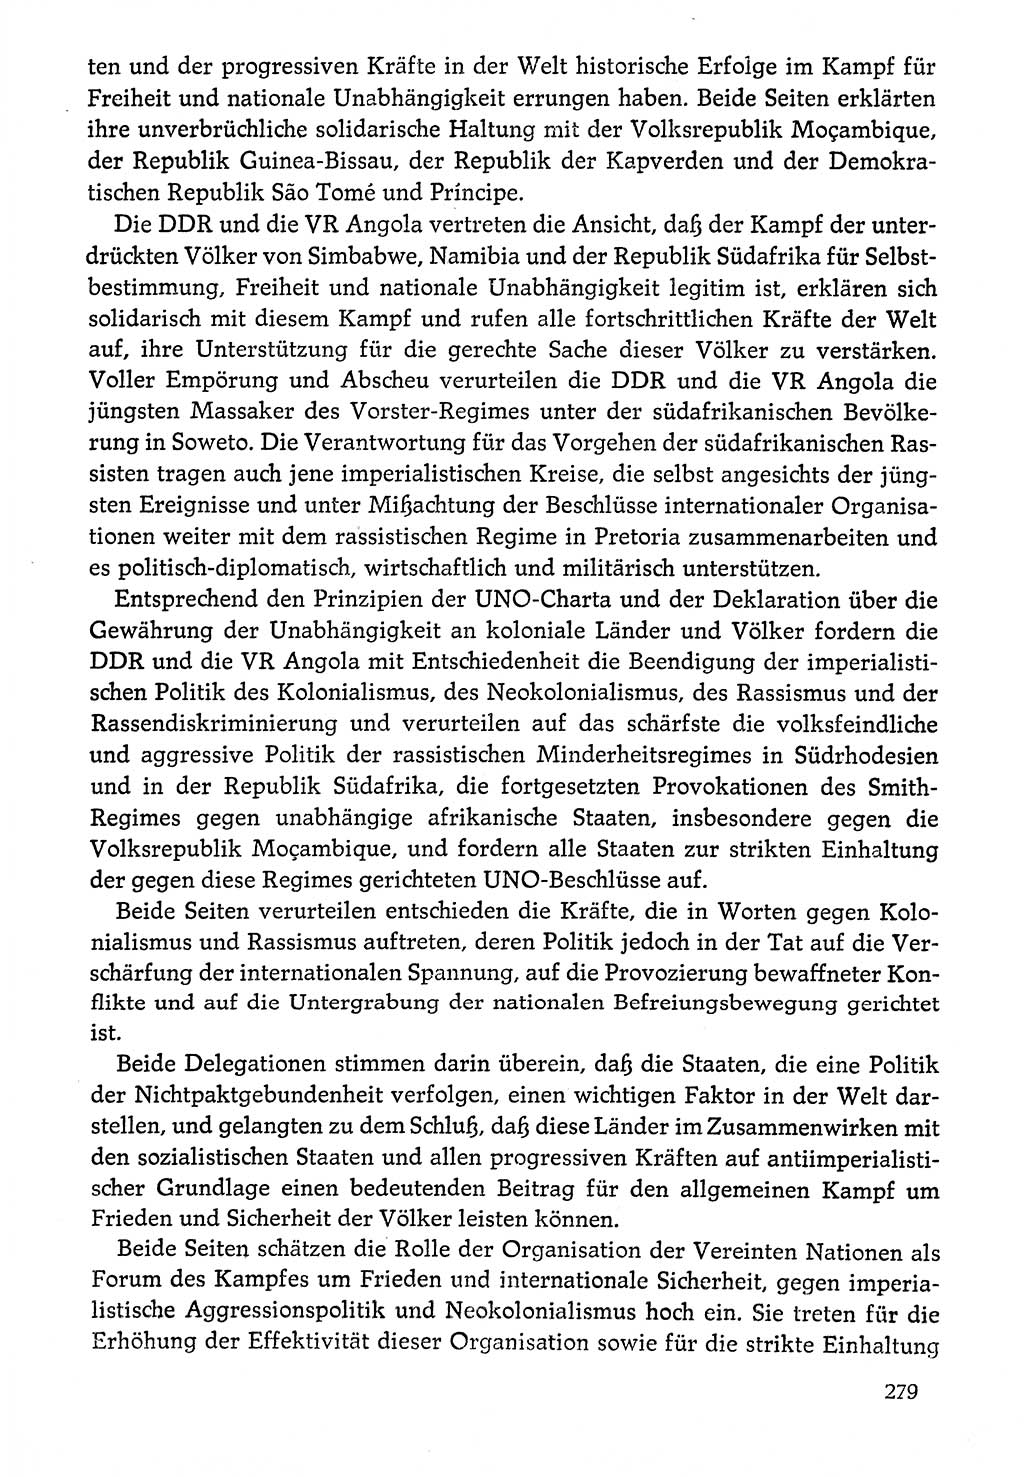 Dokumente der Sozialistischen Einheitspartei Deutschlands (SED) [Deutsche Demokratische Republik (DDR)] 1976-1977, Seite 279 (Dok. SED DDR 1976-1977, S. 279)